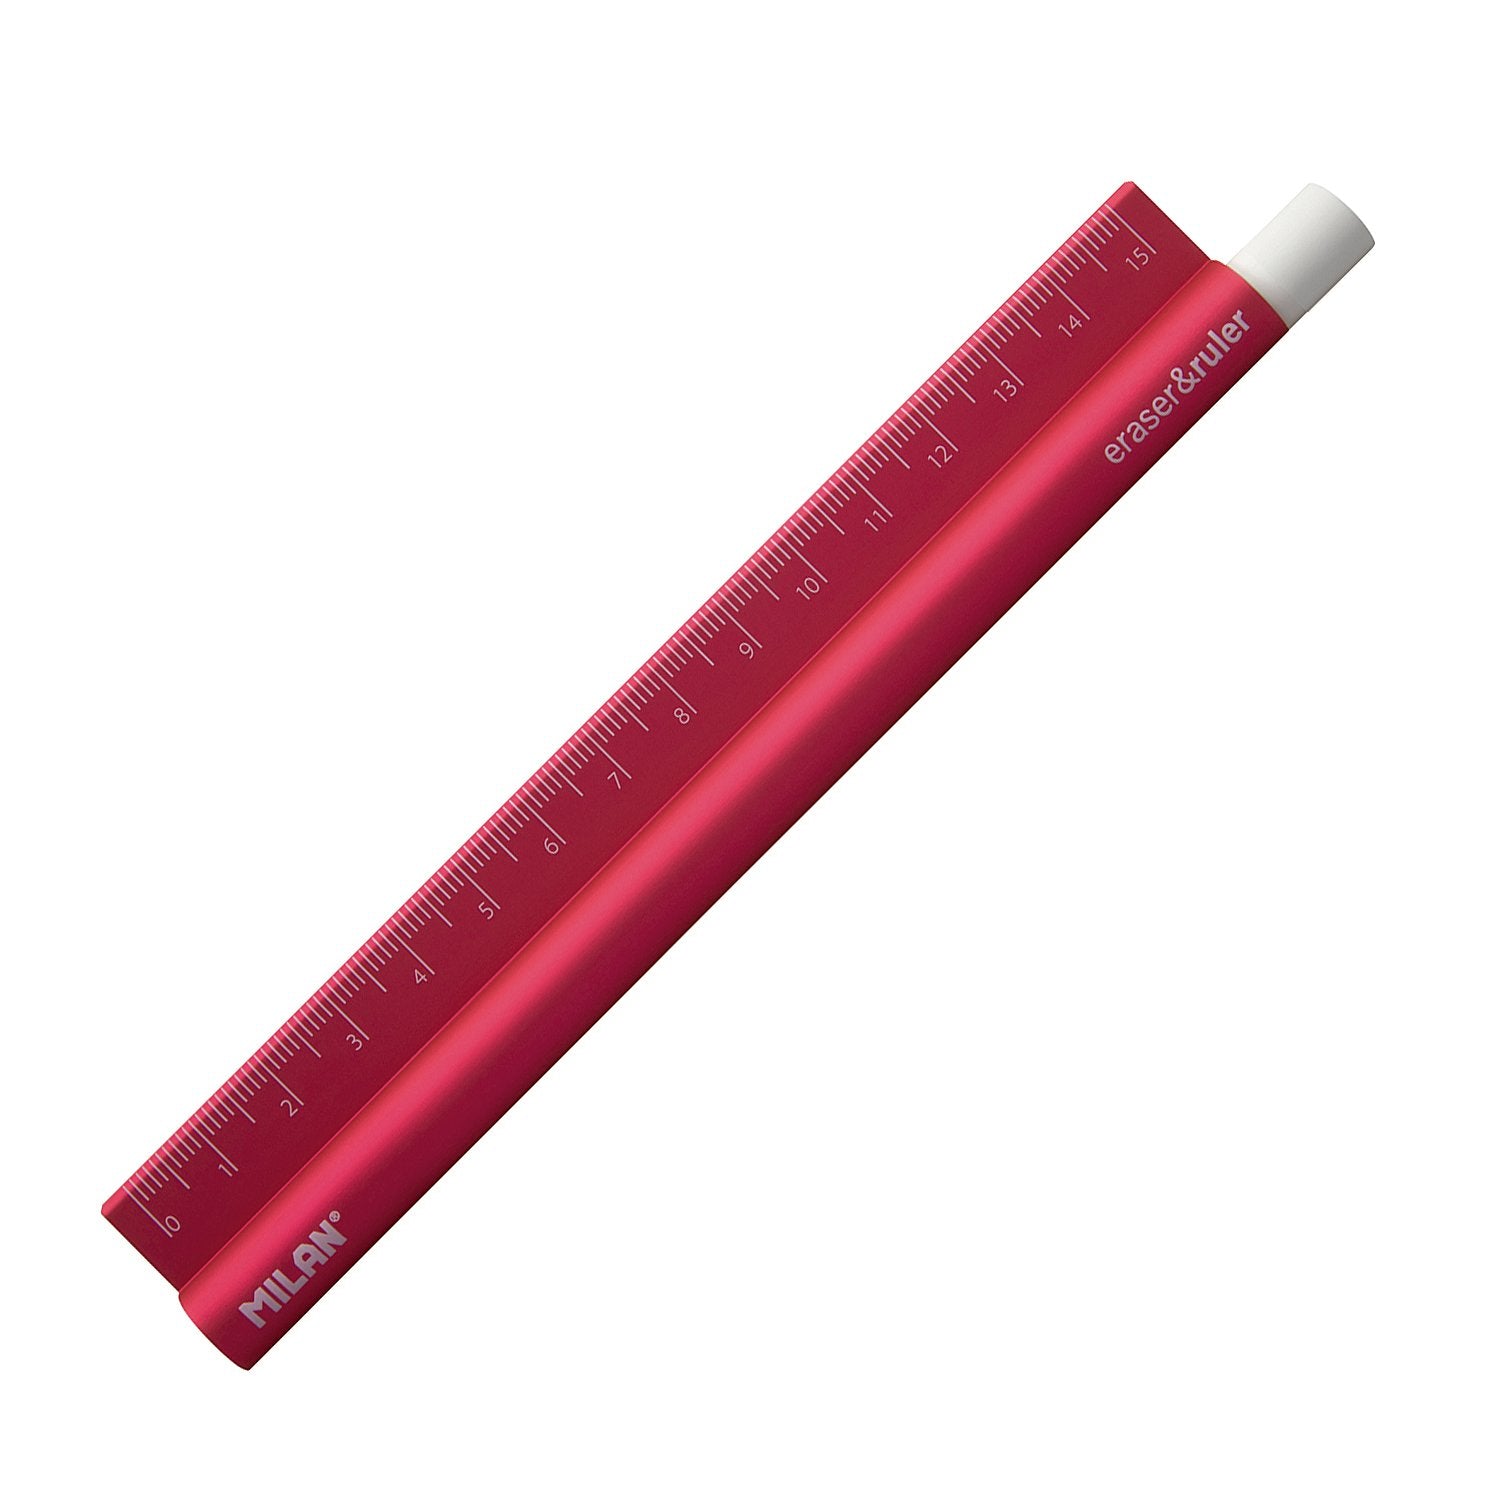 MILAN 352910 - Eraser & Ruler, Combinación de Goma y Regla de Metal de 15 cm